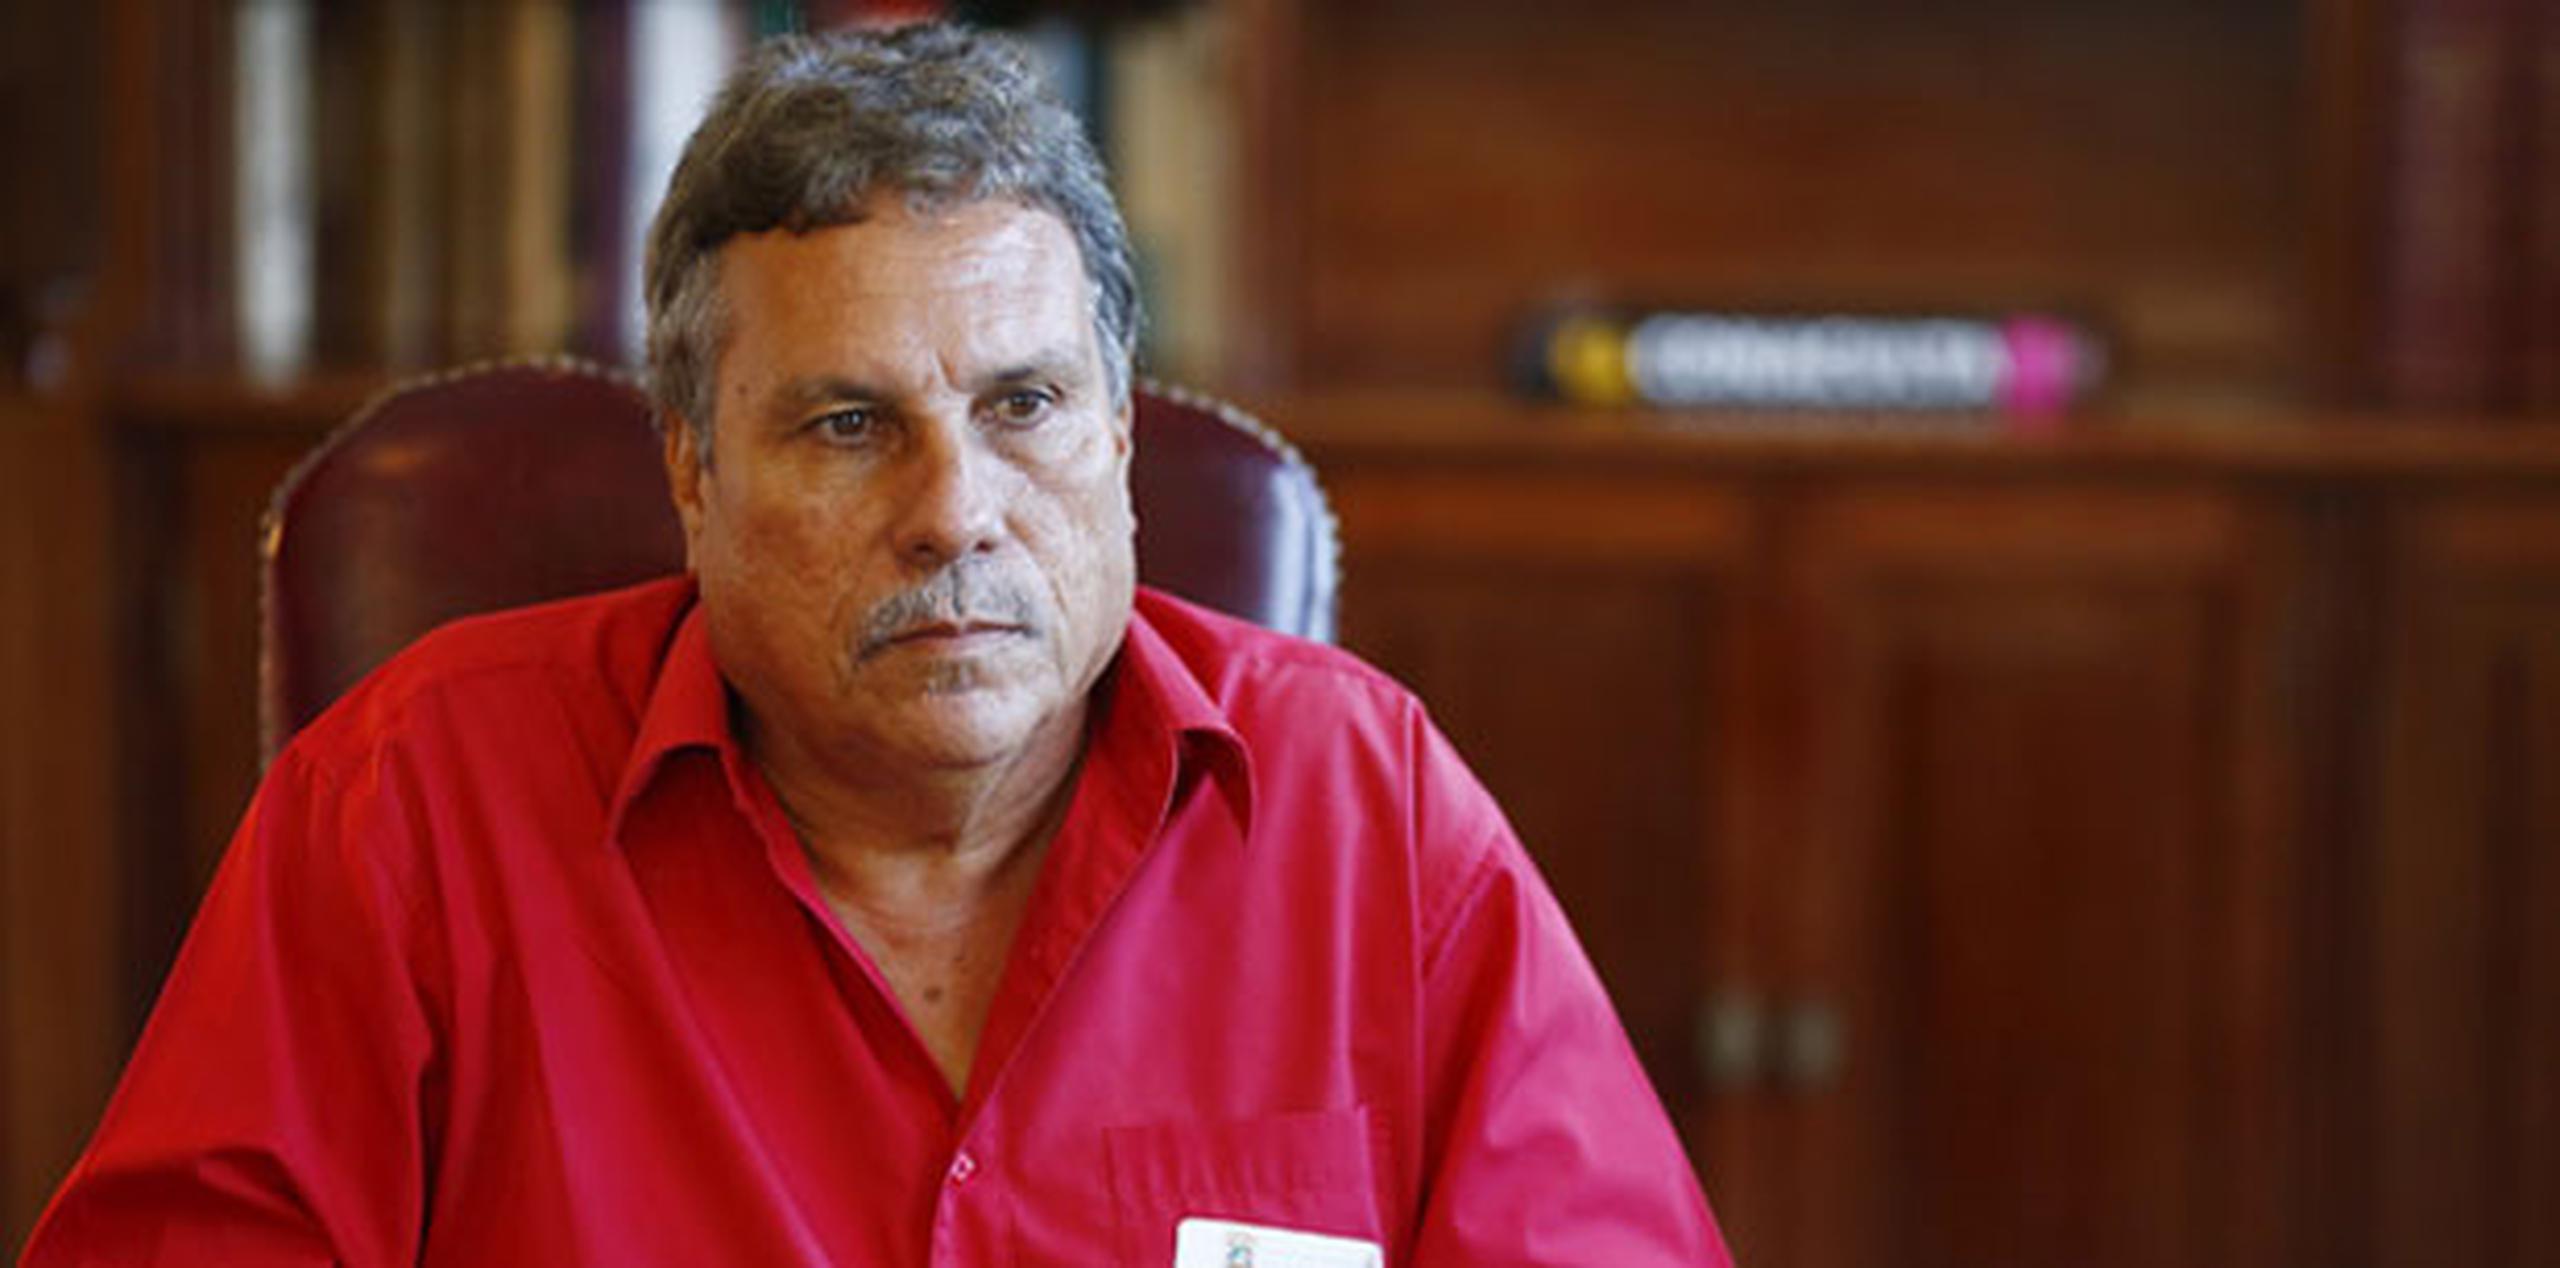 El alcalde Víctor Emeric reconoce que ordenó el análisis “ante la controversia”. (Archivo)